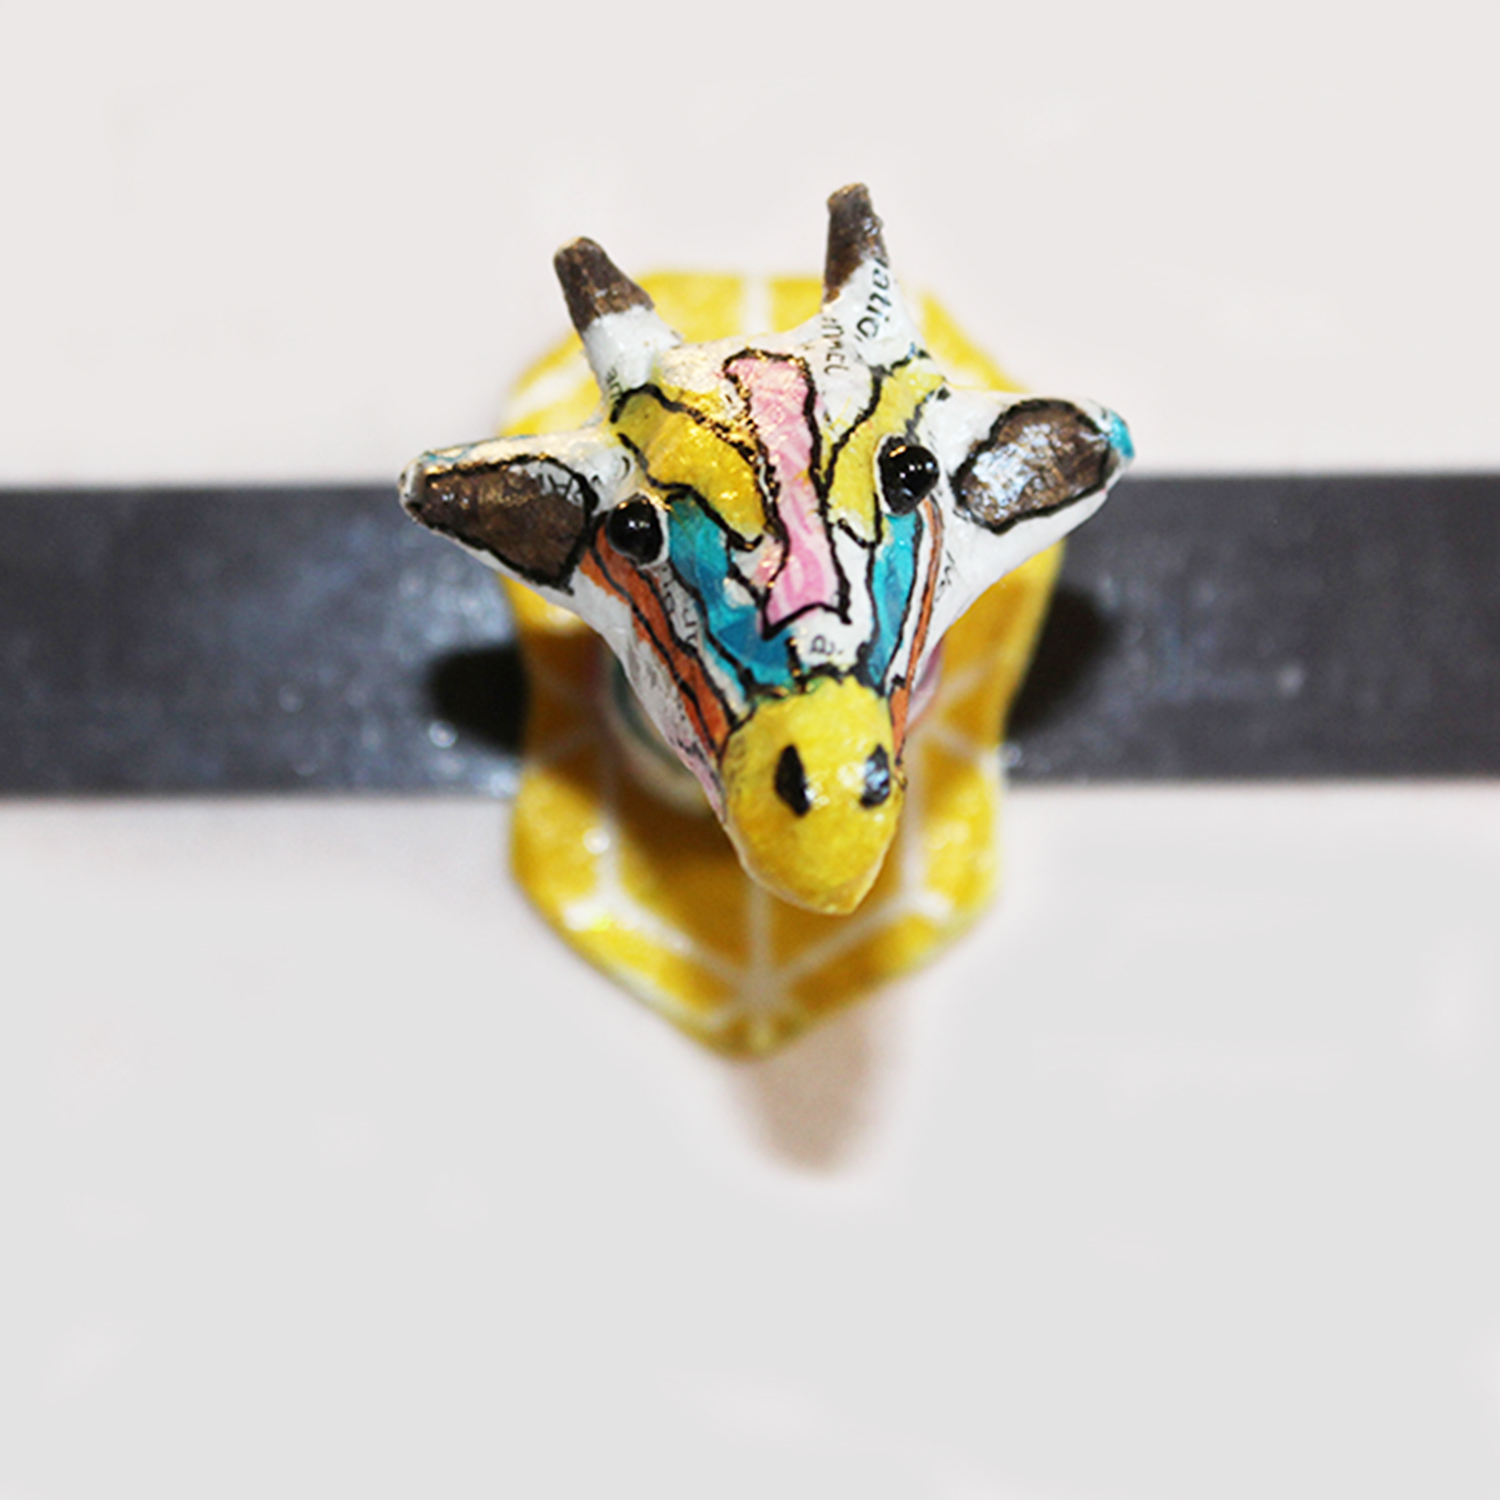 Création de magnet tête de girafe en papier mâché